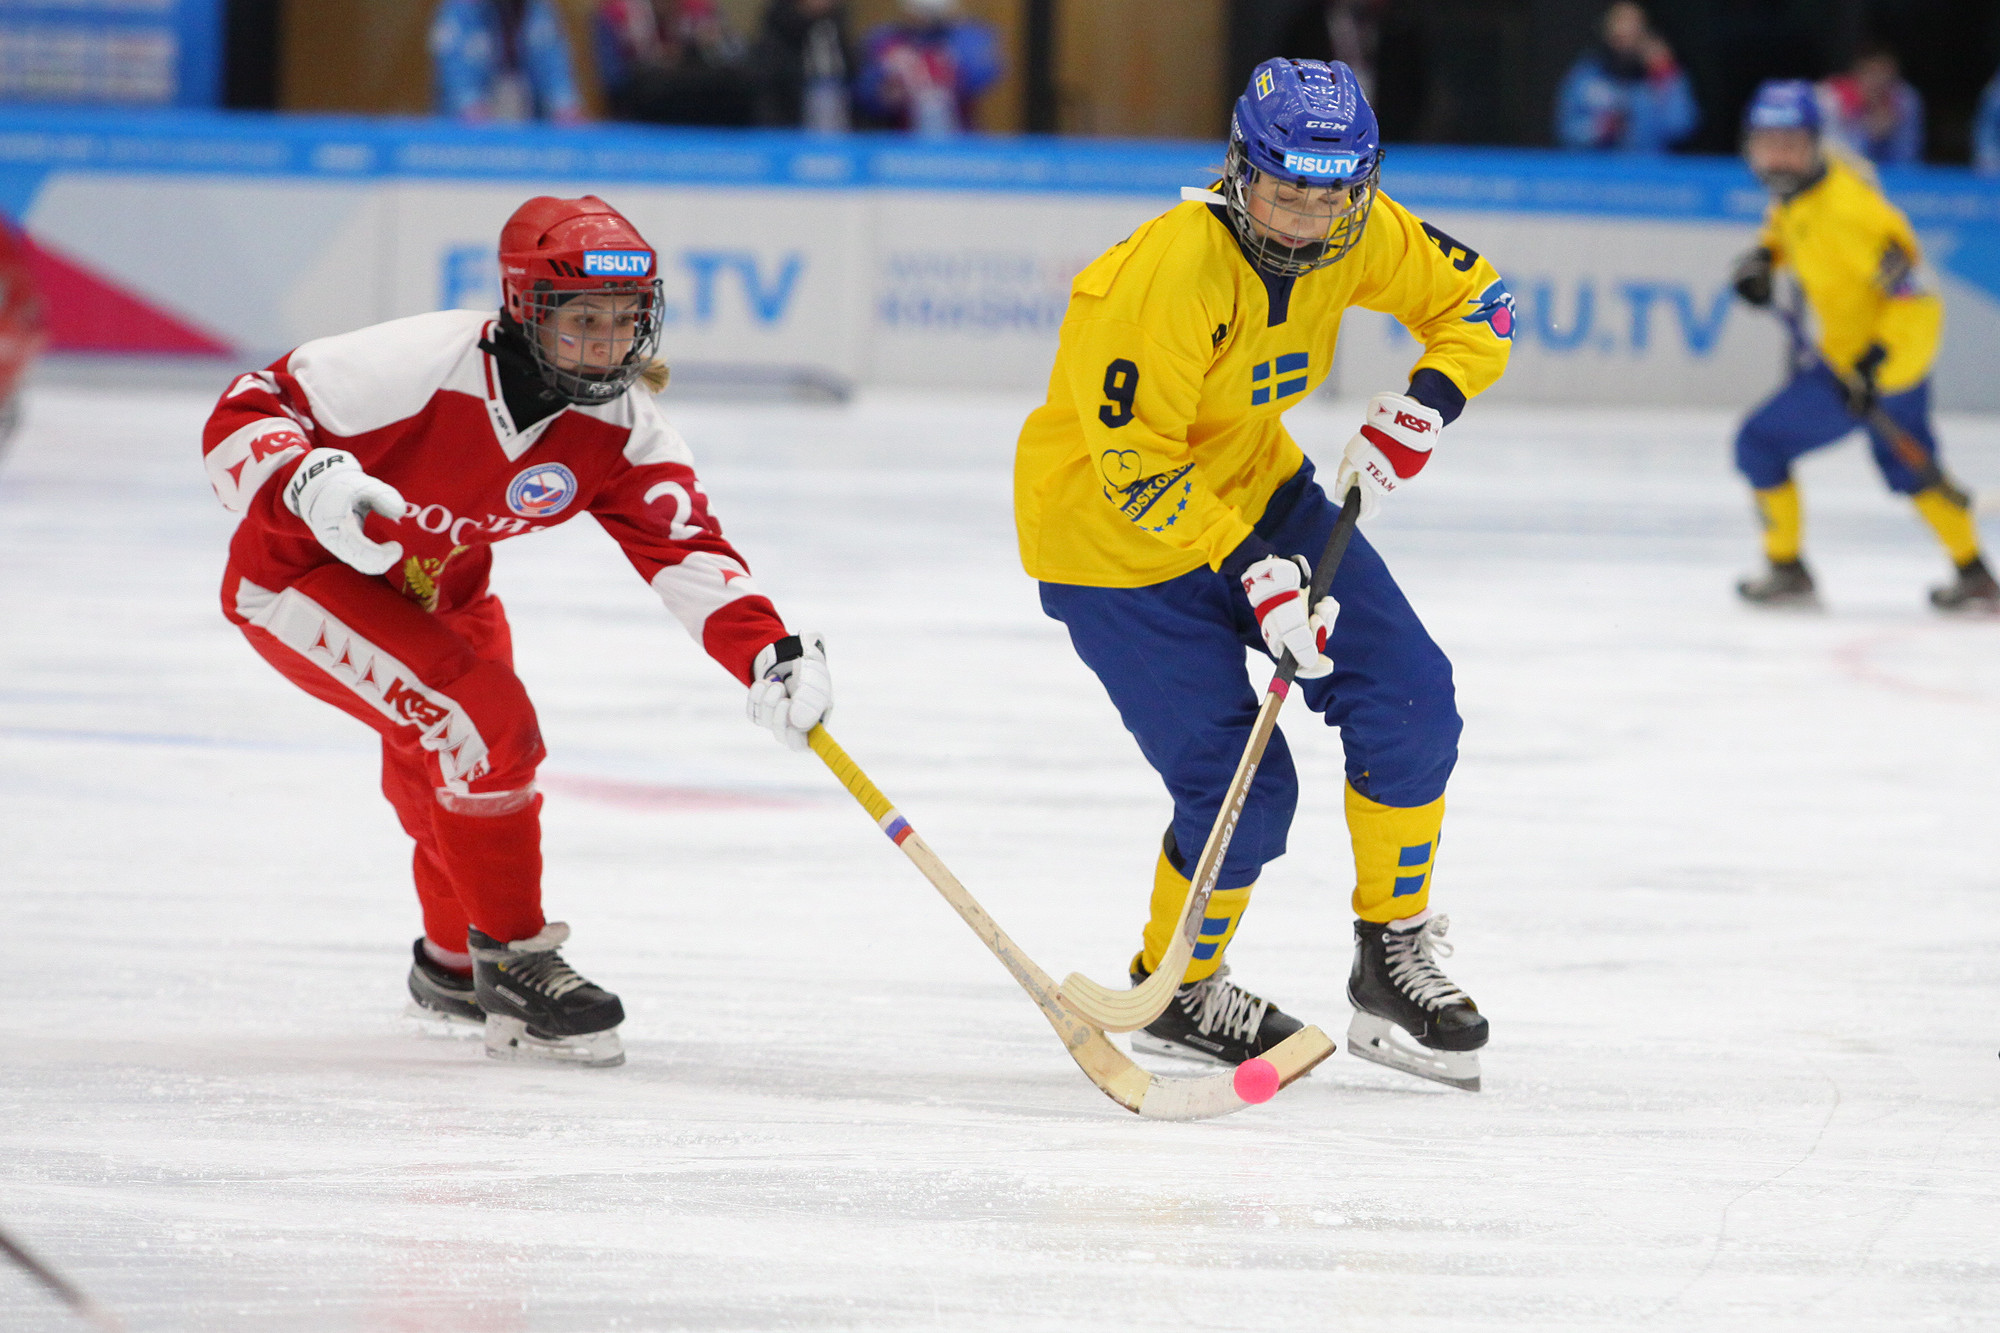 First Universiade bandy gold medal awarded to Sweden at Krasnoyarsk 2019